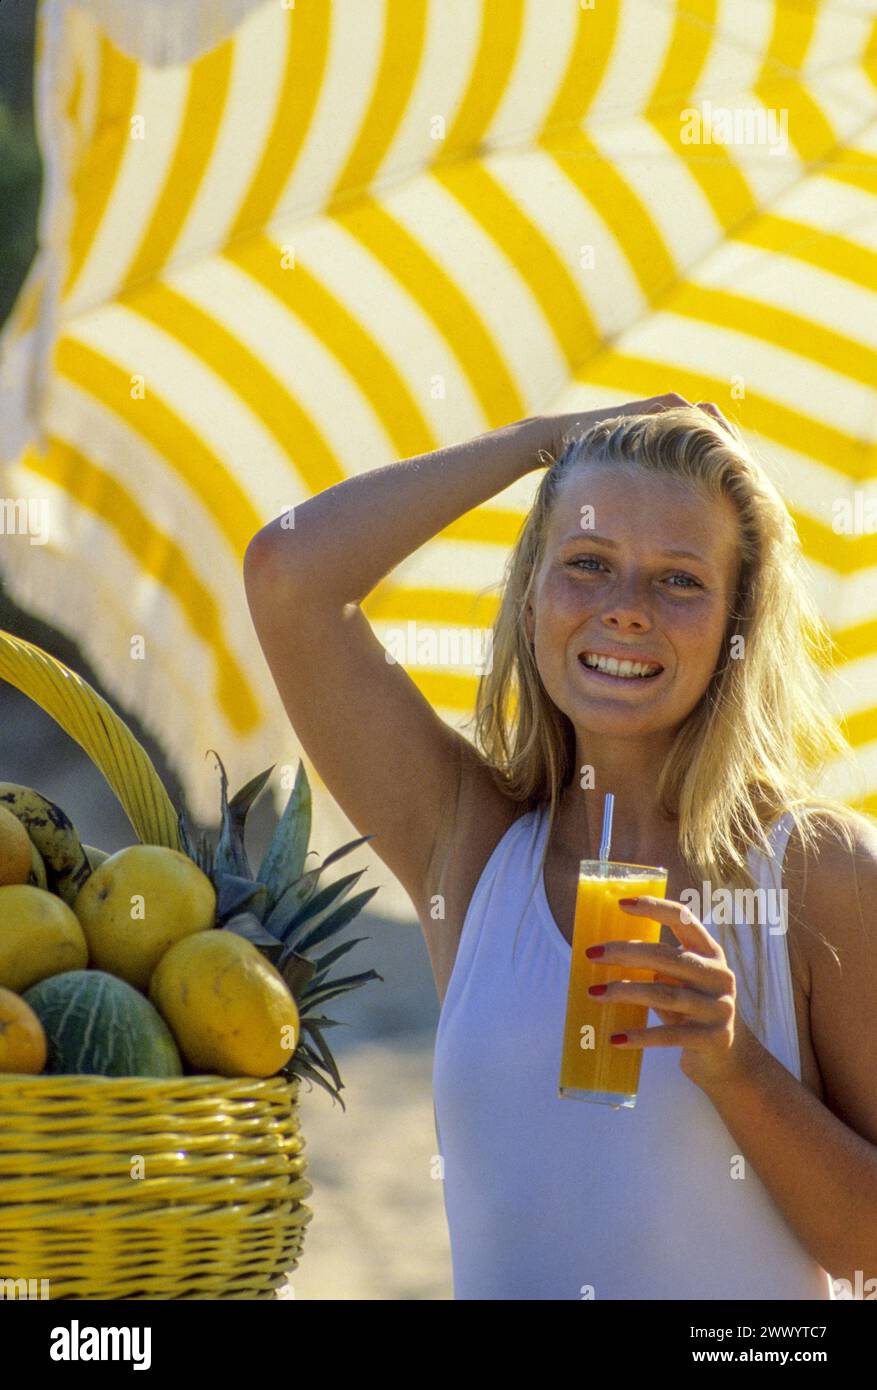 joli cheveux blonds jeune femme attrayante regardant la caméra avant heathy sourire buvant du jus d'orange un parapluie jaune panier de fruits côté sur le fond Banque D'Images